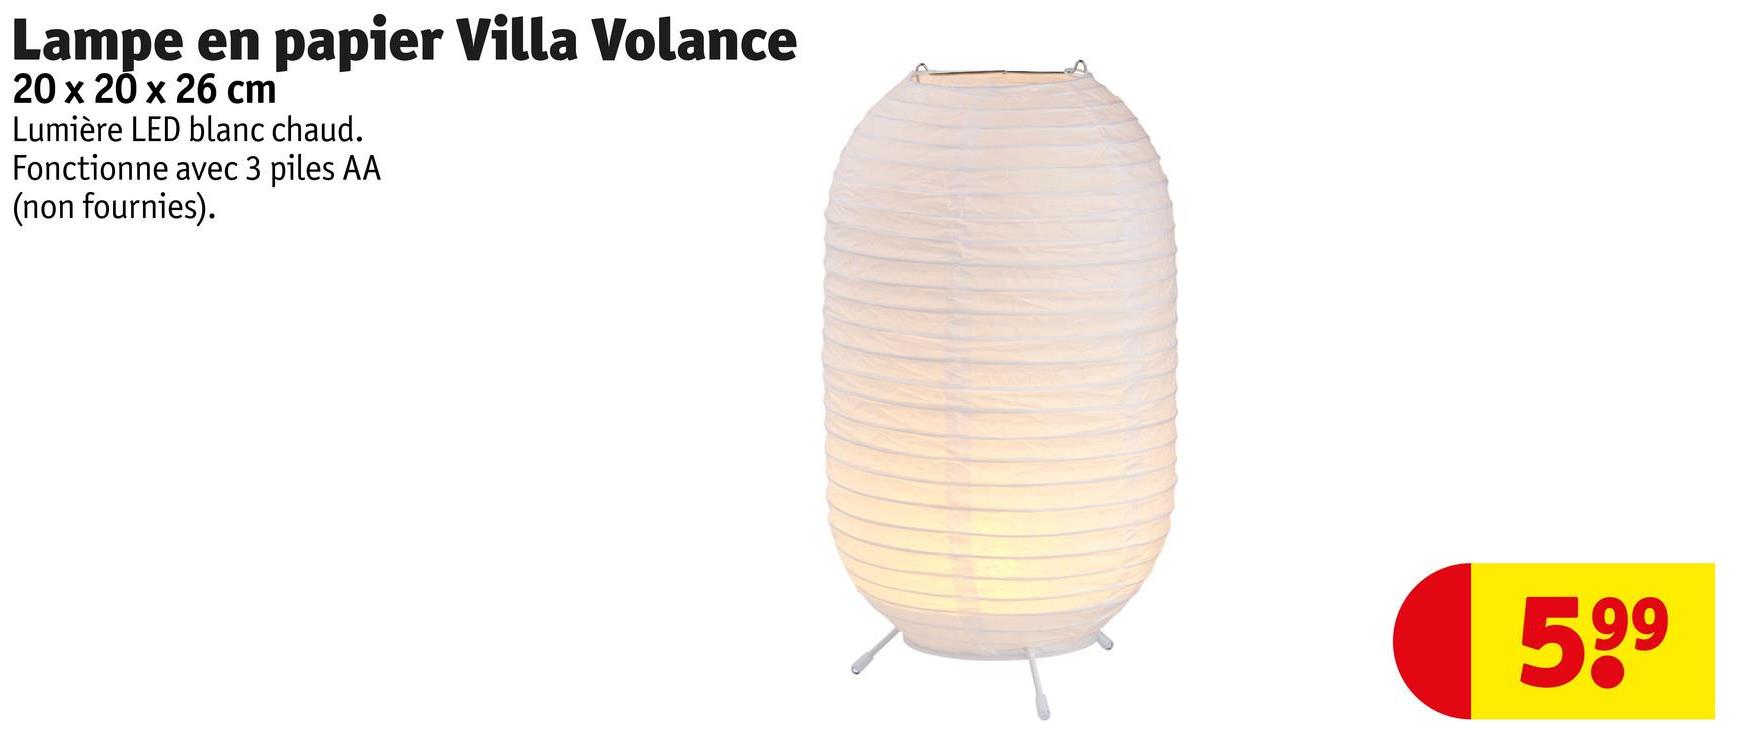 Lampe en papier Villa Volance
20 x 20 x 26 cm
Lumière LED blanc chaud.
Fonctionne avec 3 piles AA
(non fournies).
599